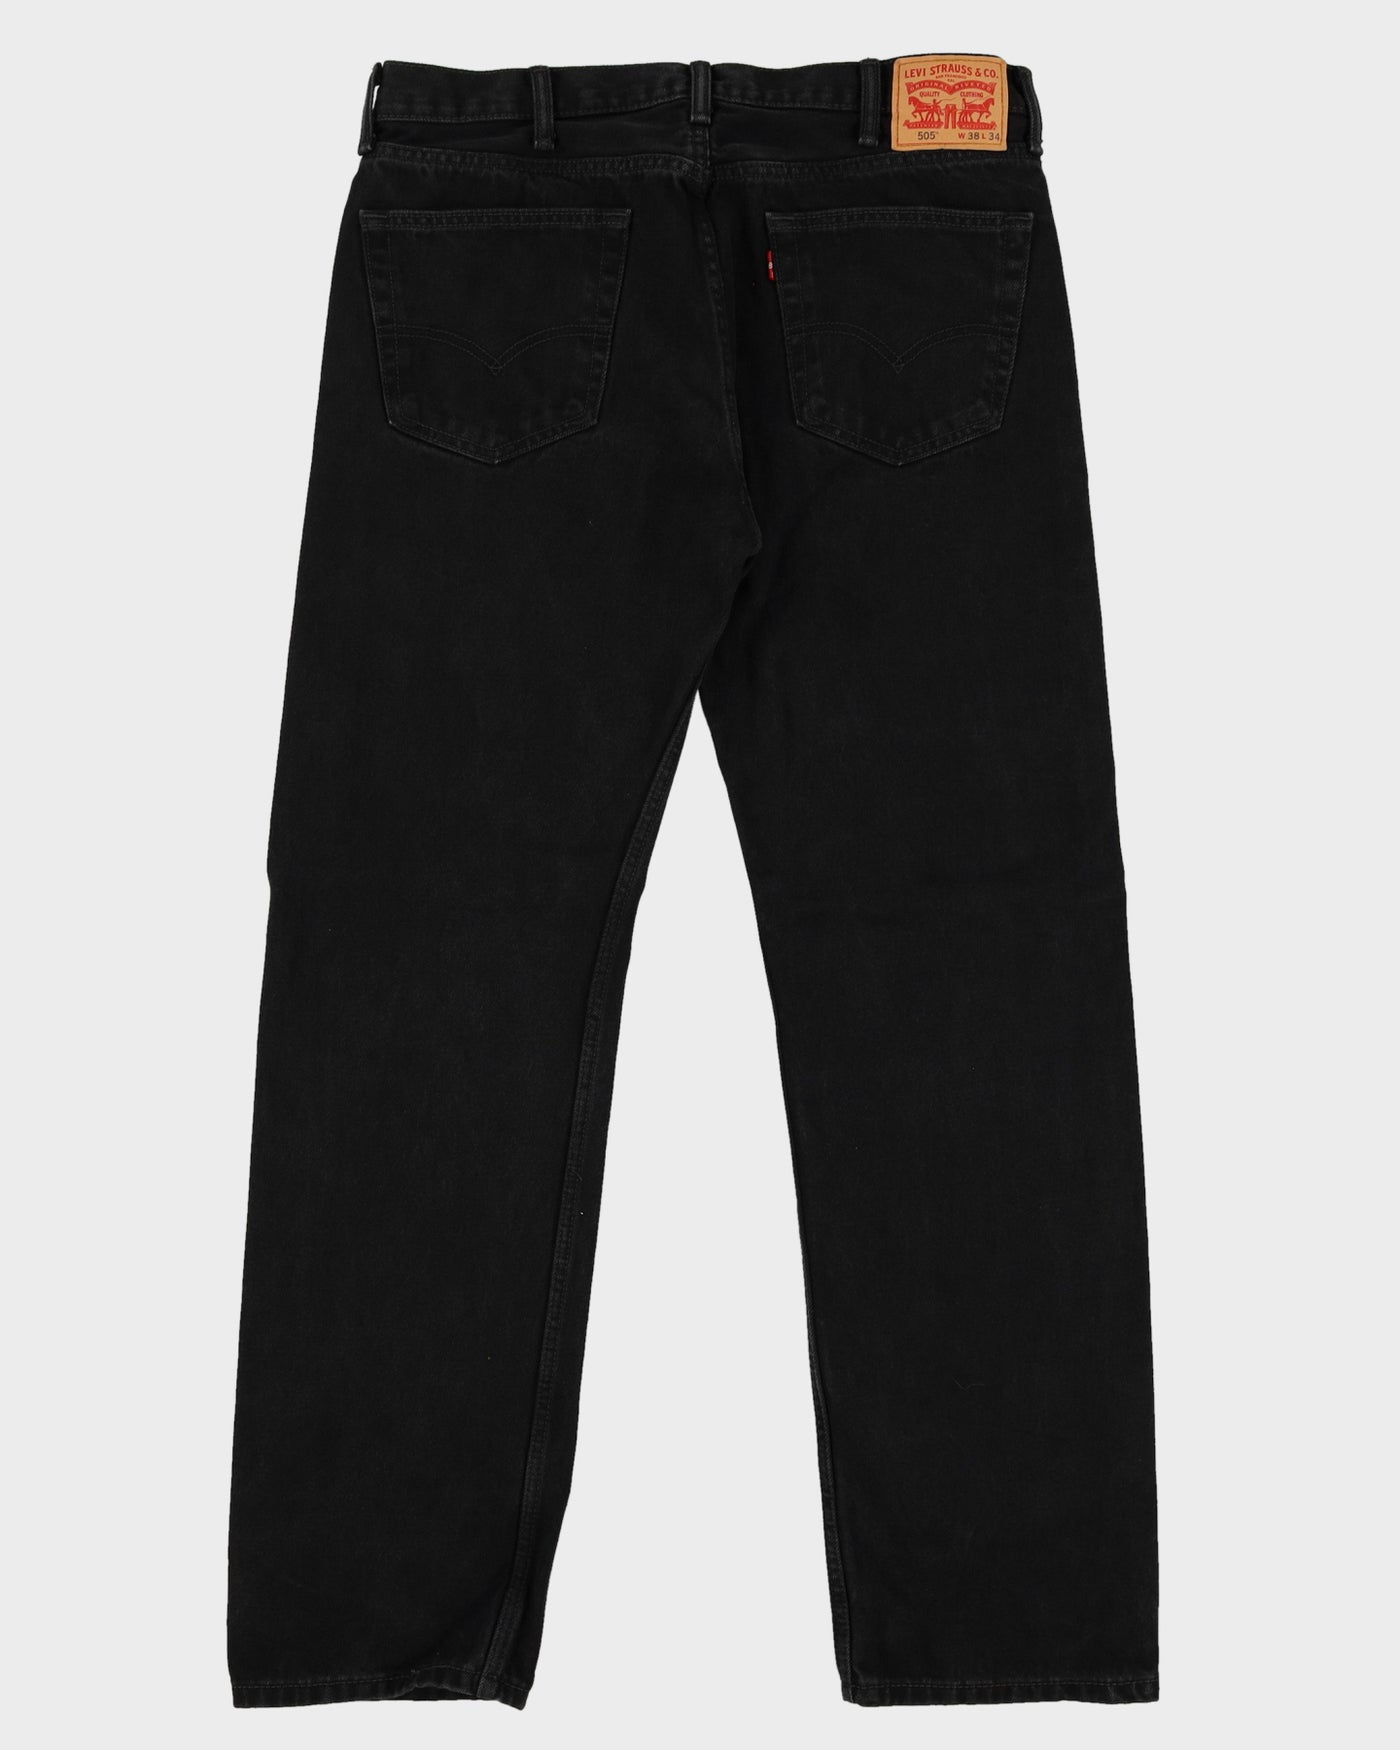 Levi's 505 Black Dark Wash Jeans - W38 L34